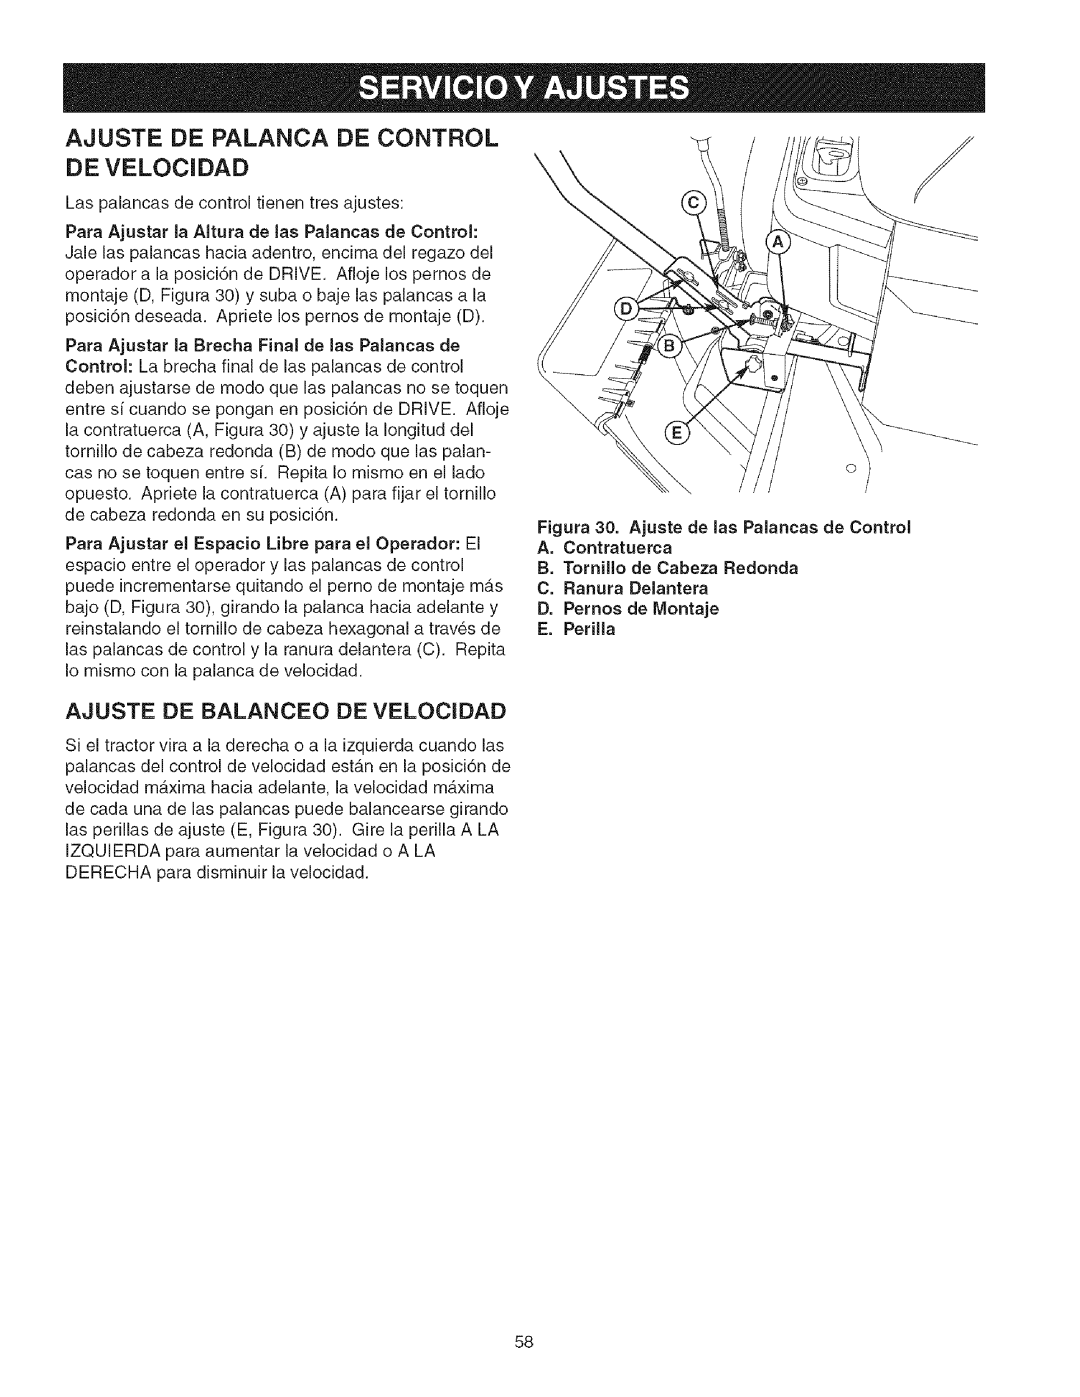 Craftsman 107.27768 manual Ajuste De Palanca De Control, Ajuste De Balanceo De Velocidad, D.Pernos de Montaje E.Perilla 